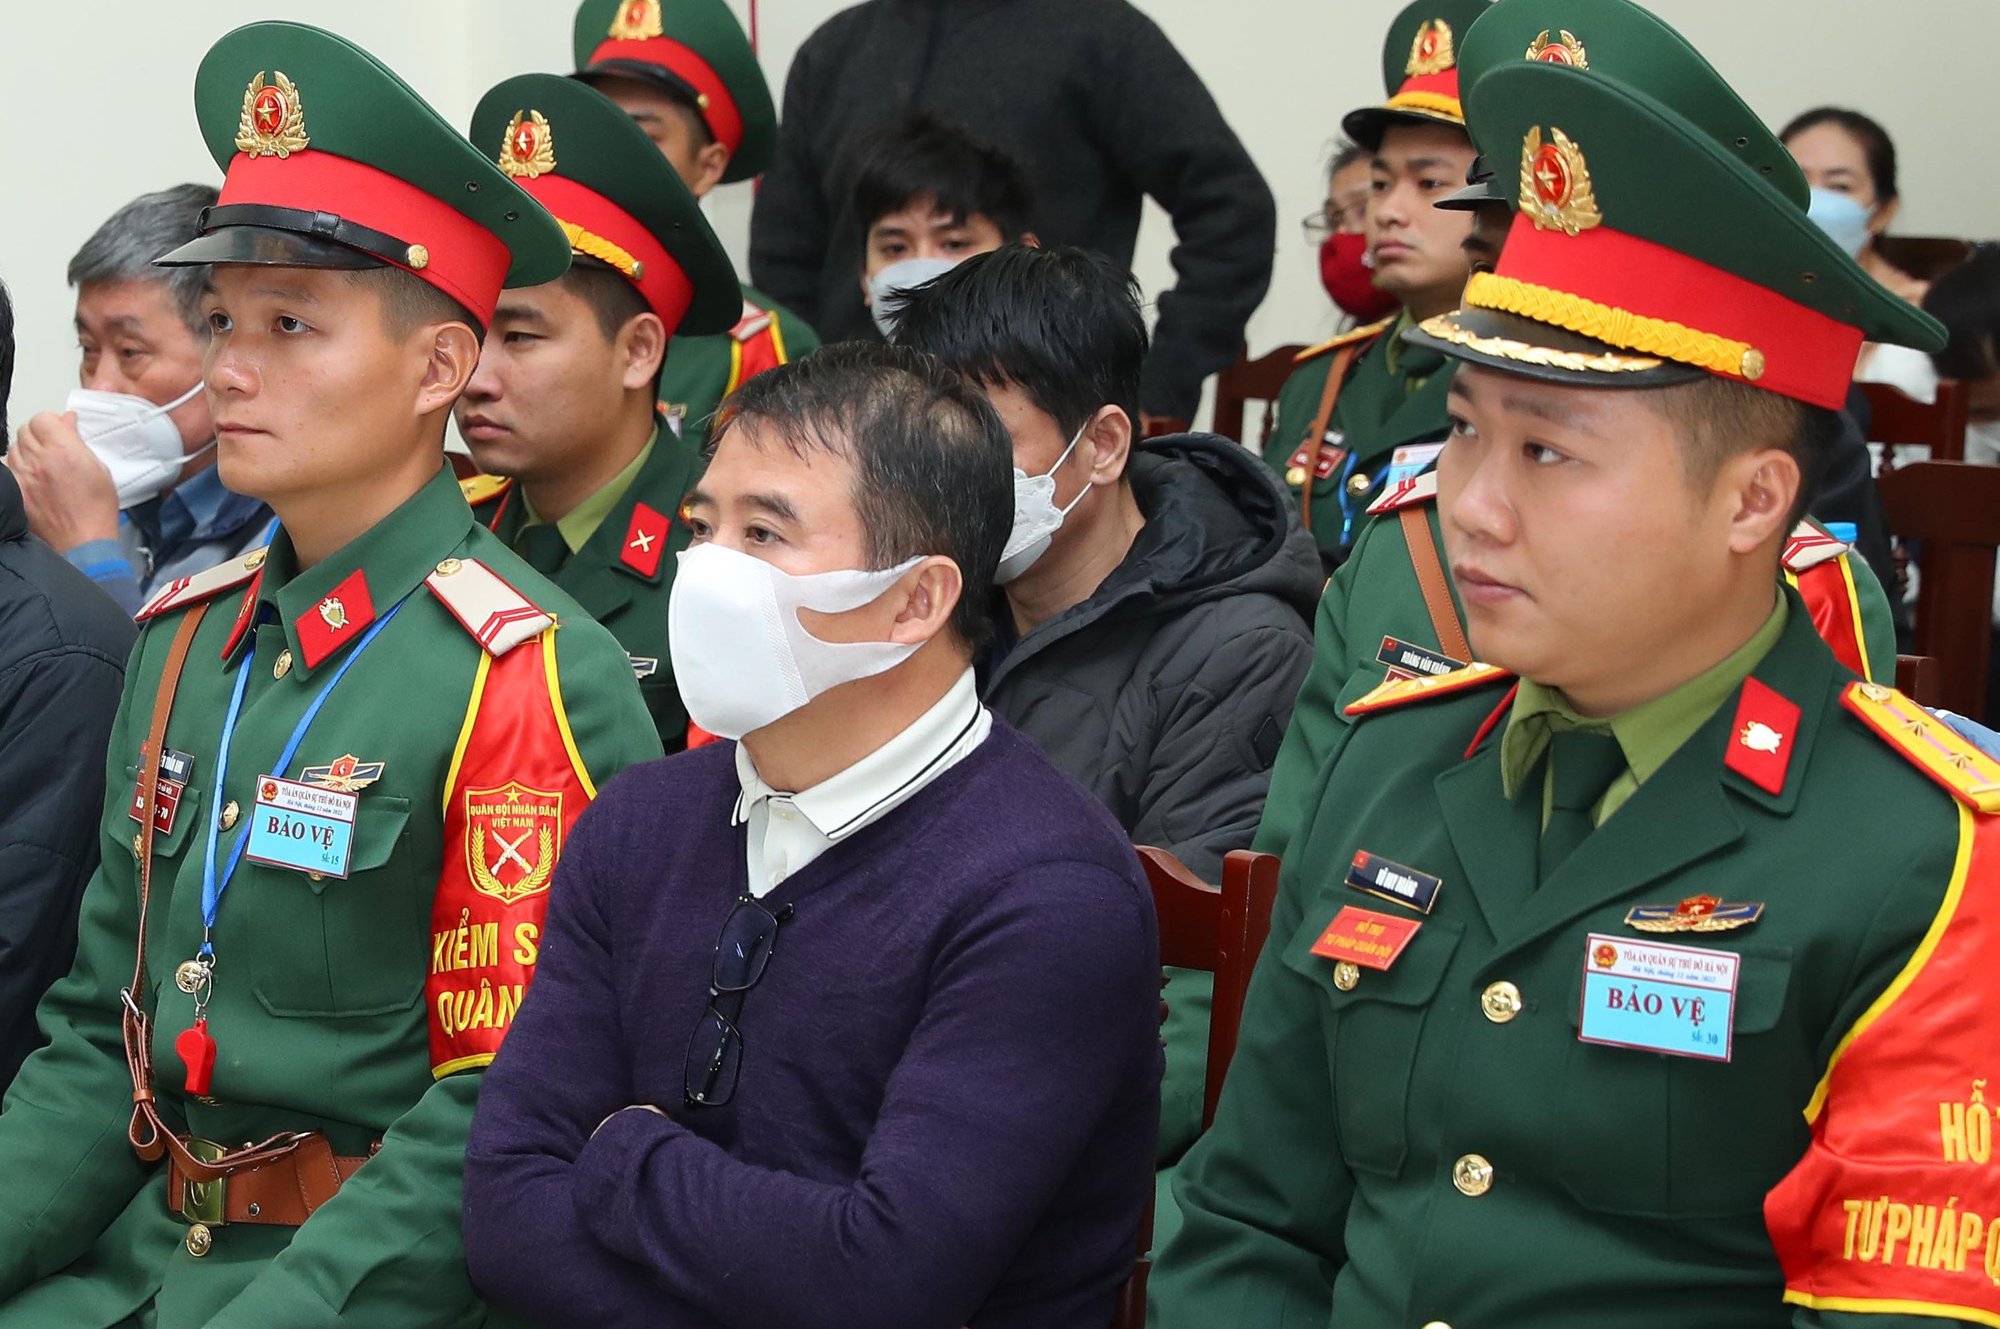 Vụ buôn lậu xăng dầu: Cựu đại tá Nguyễn Thế Anh không kêu oan tội nhận hối lộ nữa - Ảnh 1.